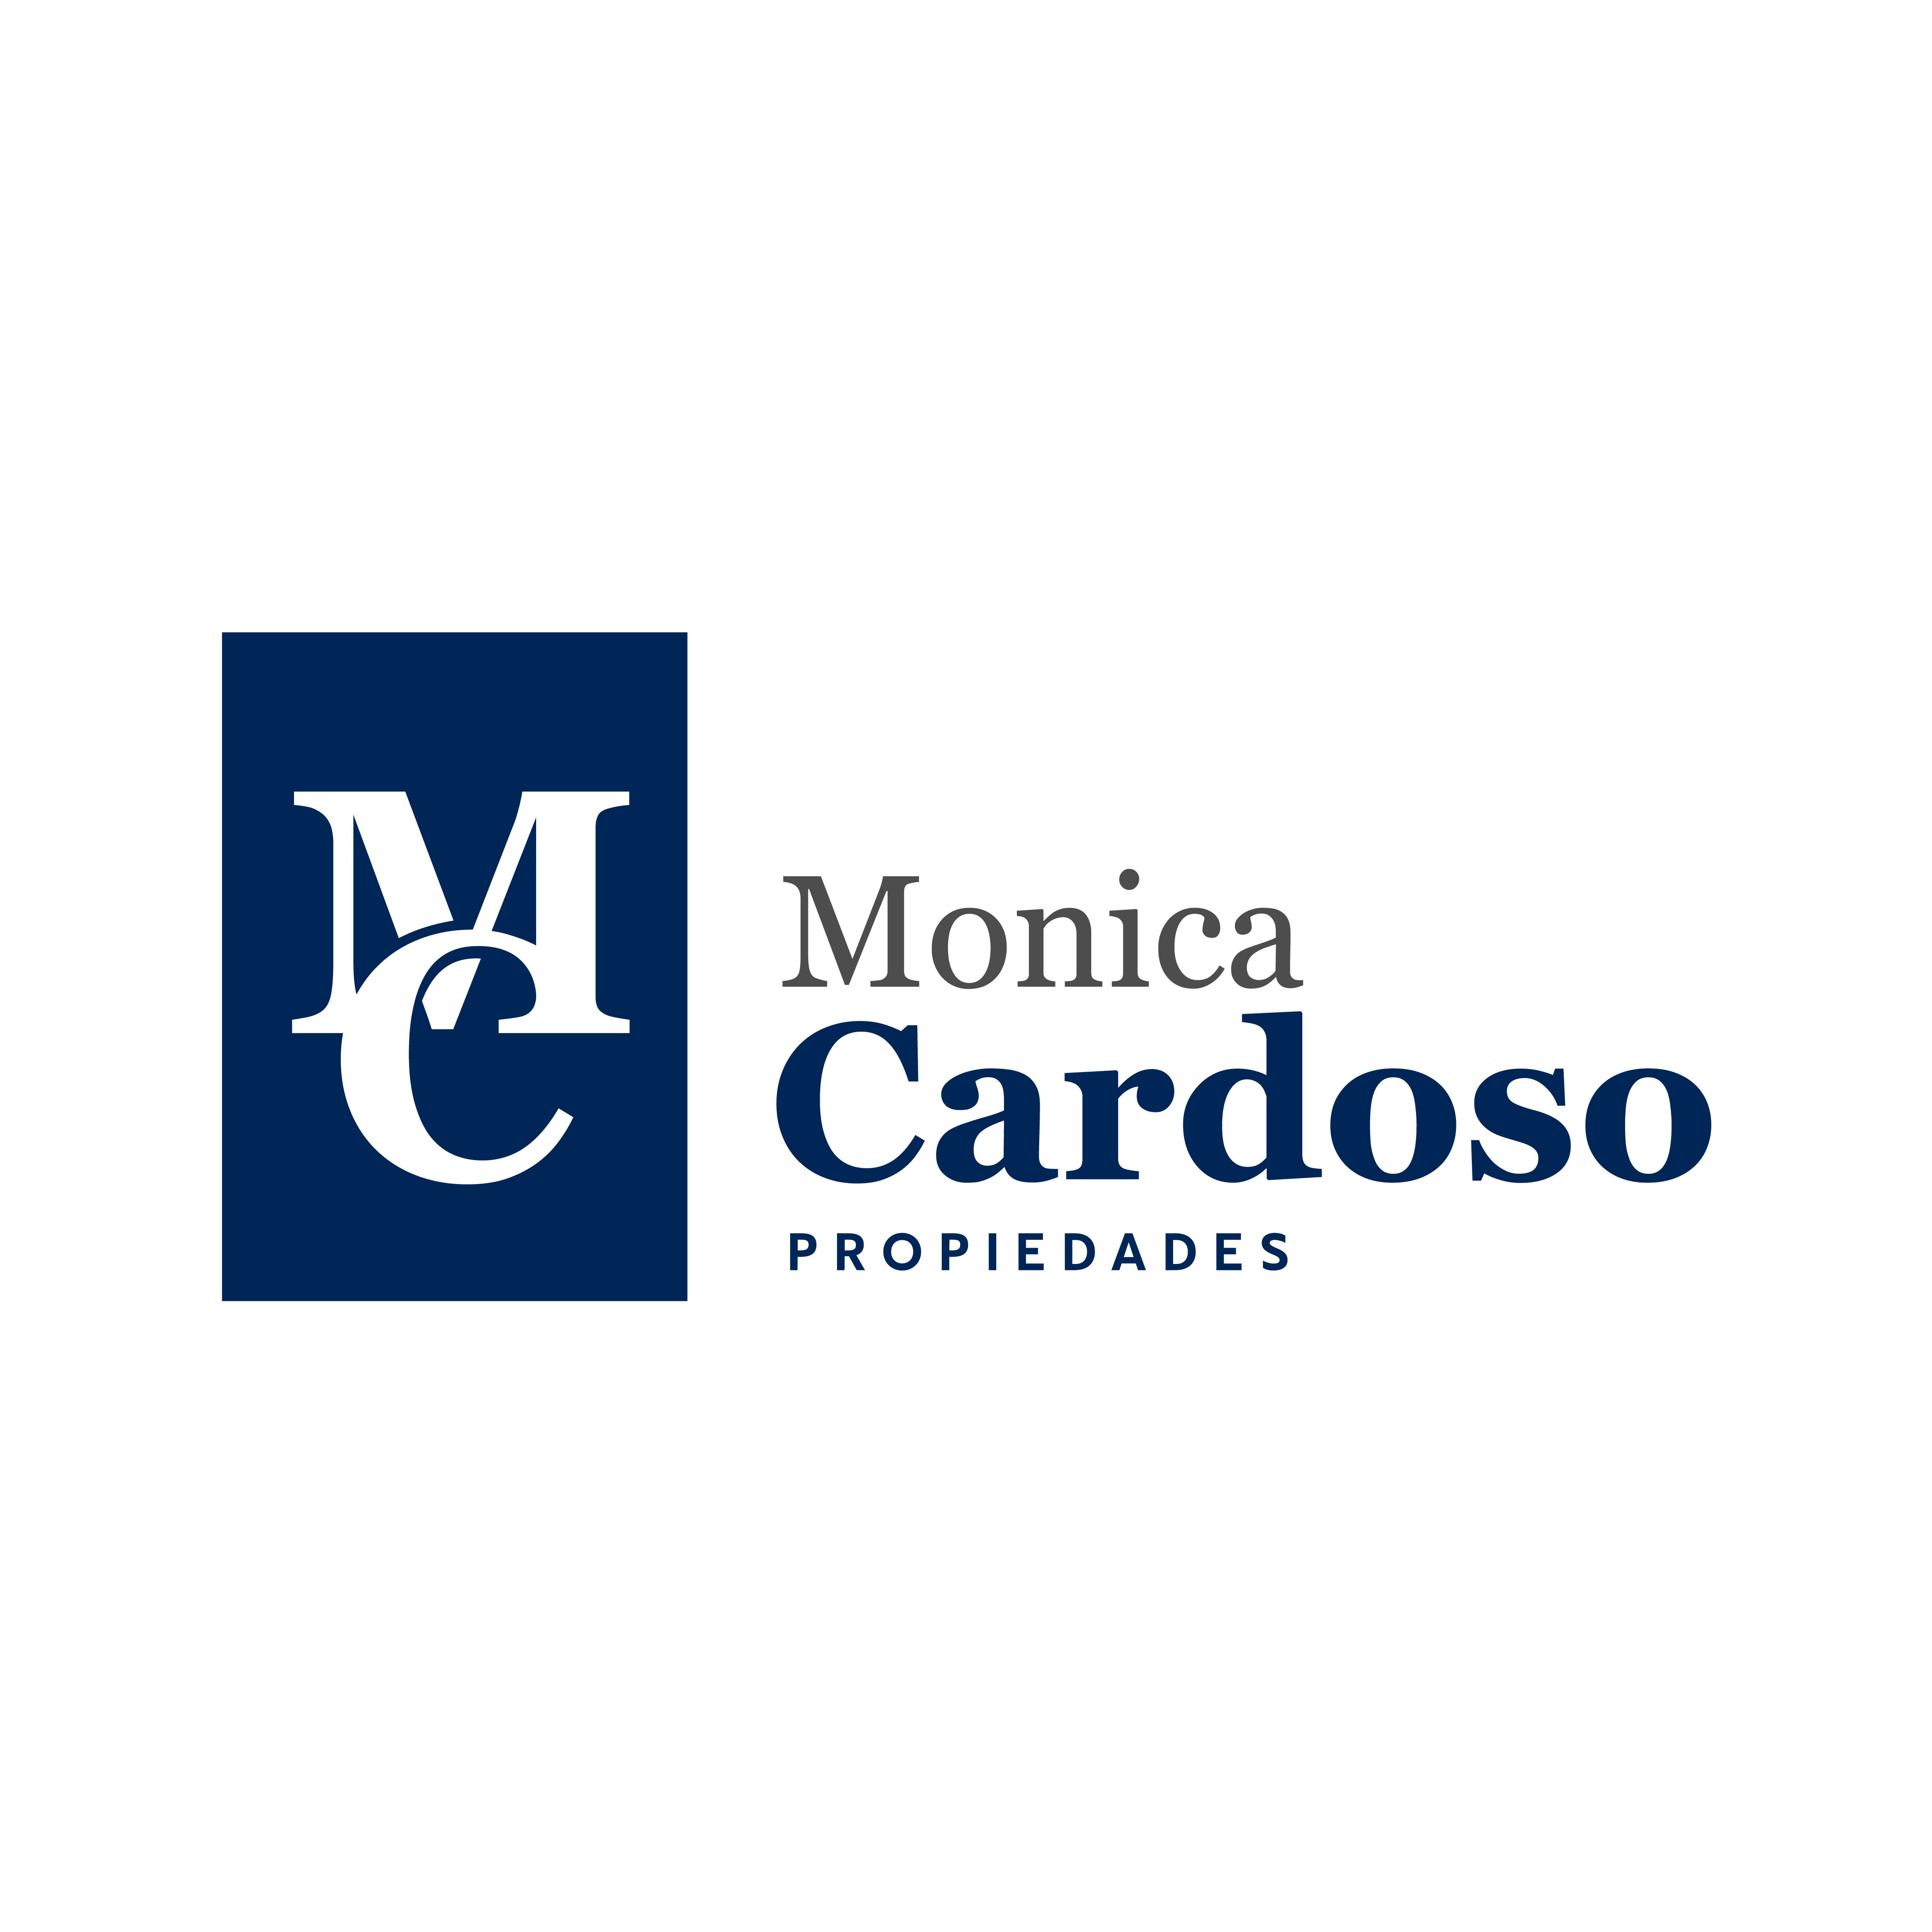 Monica Cardoso Propiedades